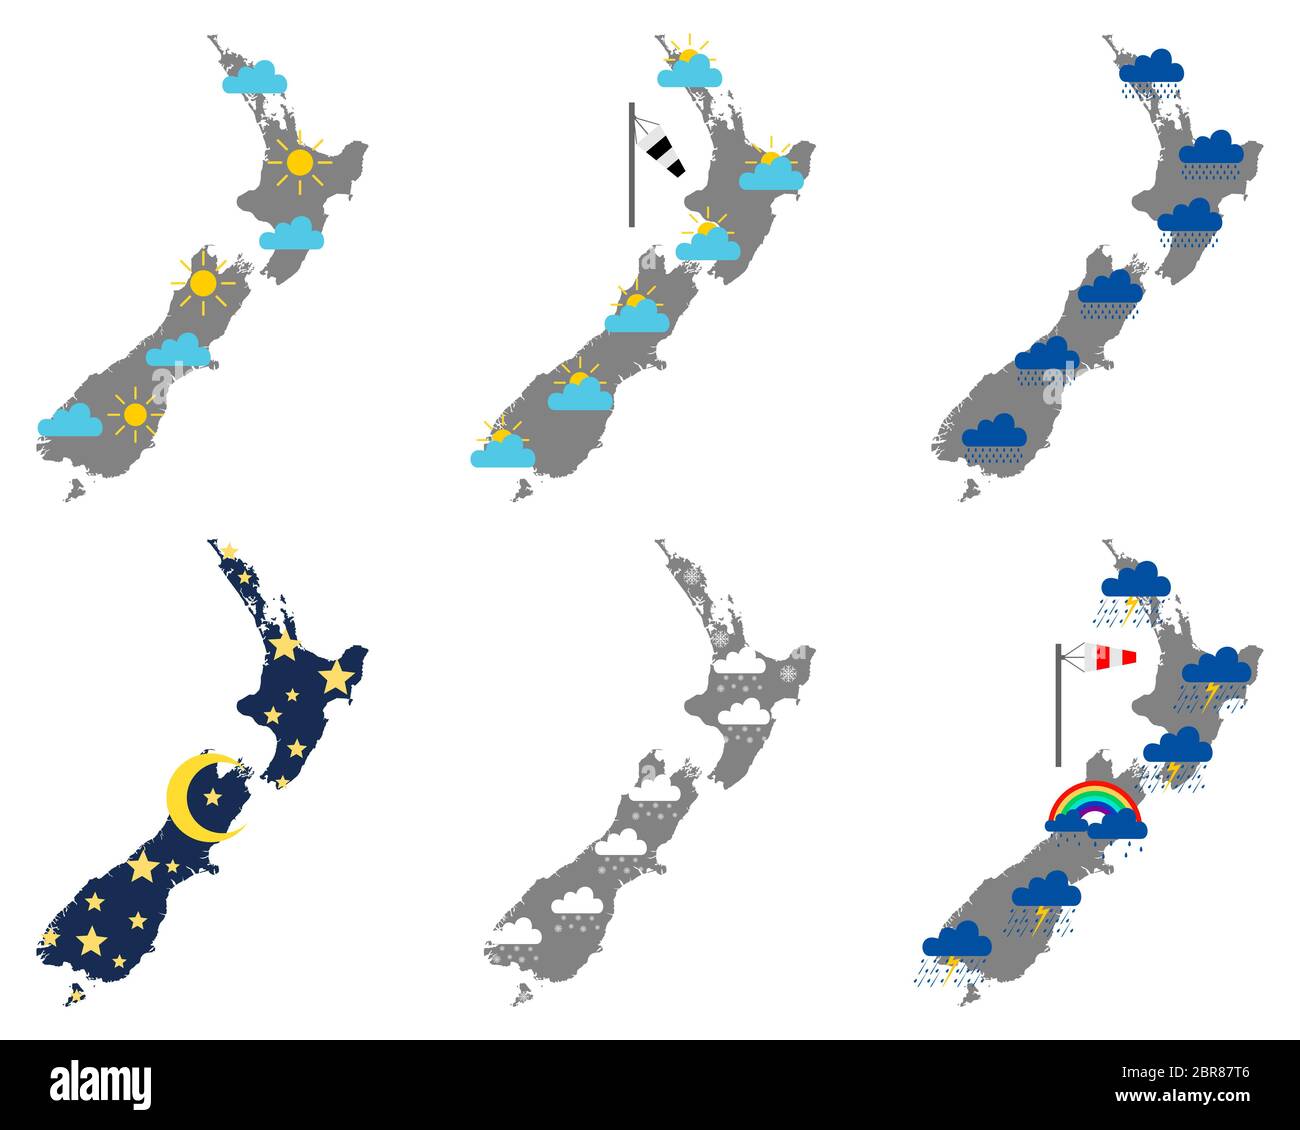 Karten von Neuseeland mit verschiedenen Wettersymbolen Stock Photo